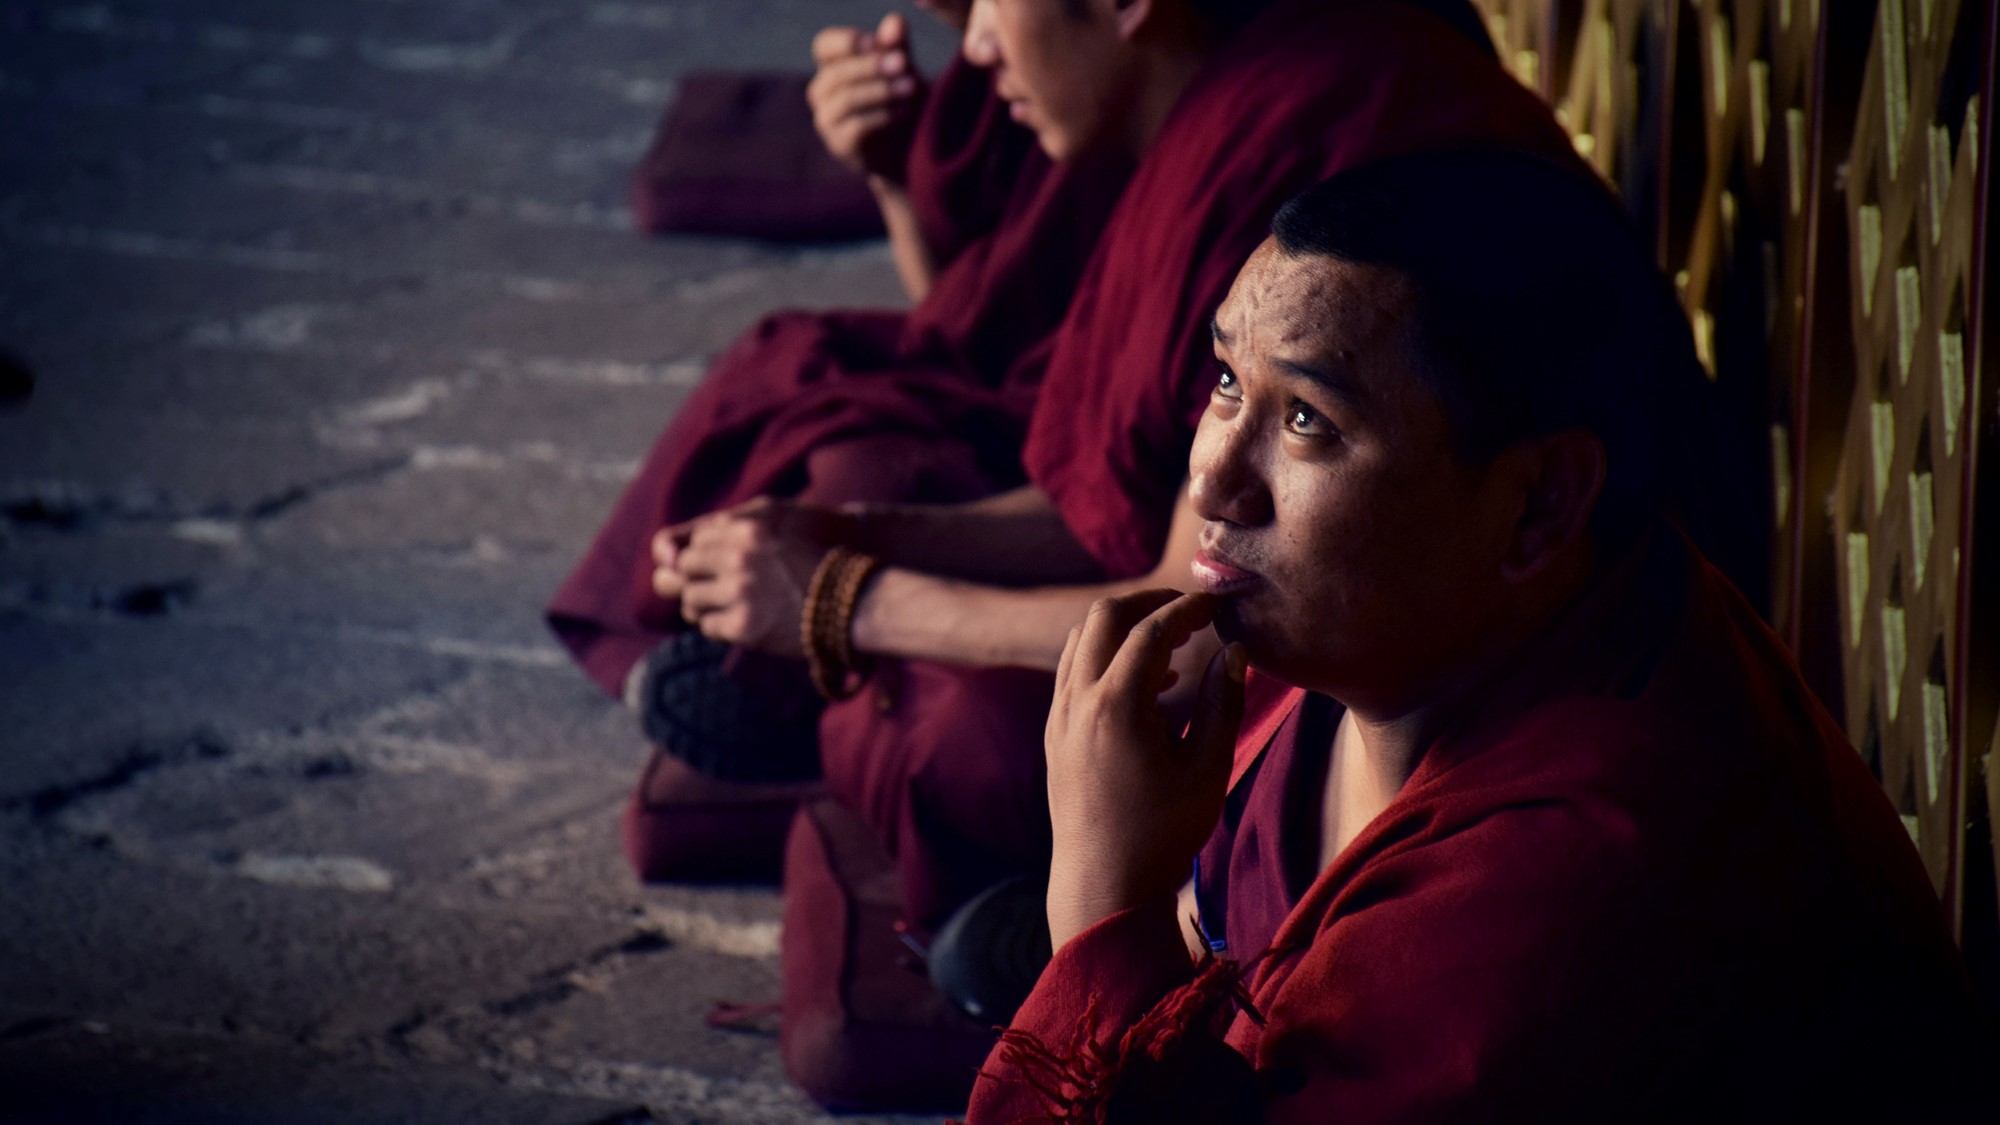 Buddhistisk munk ser tankefull ut i luften